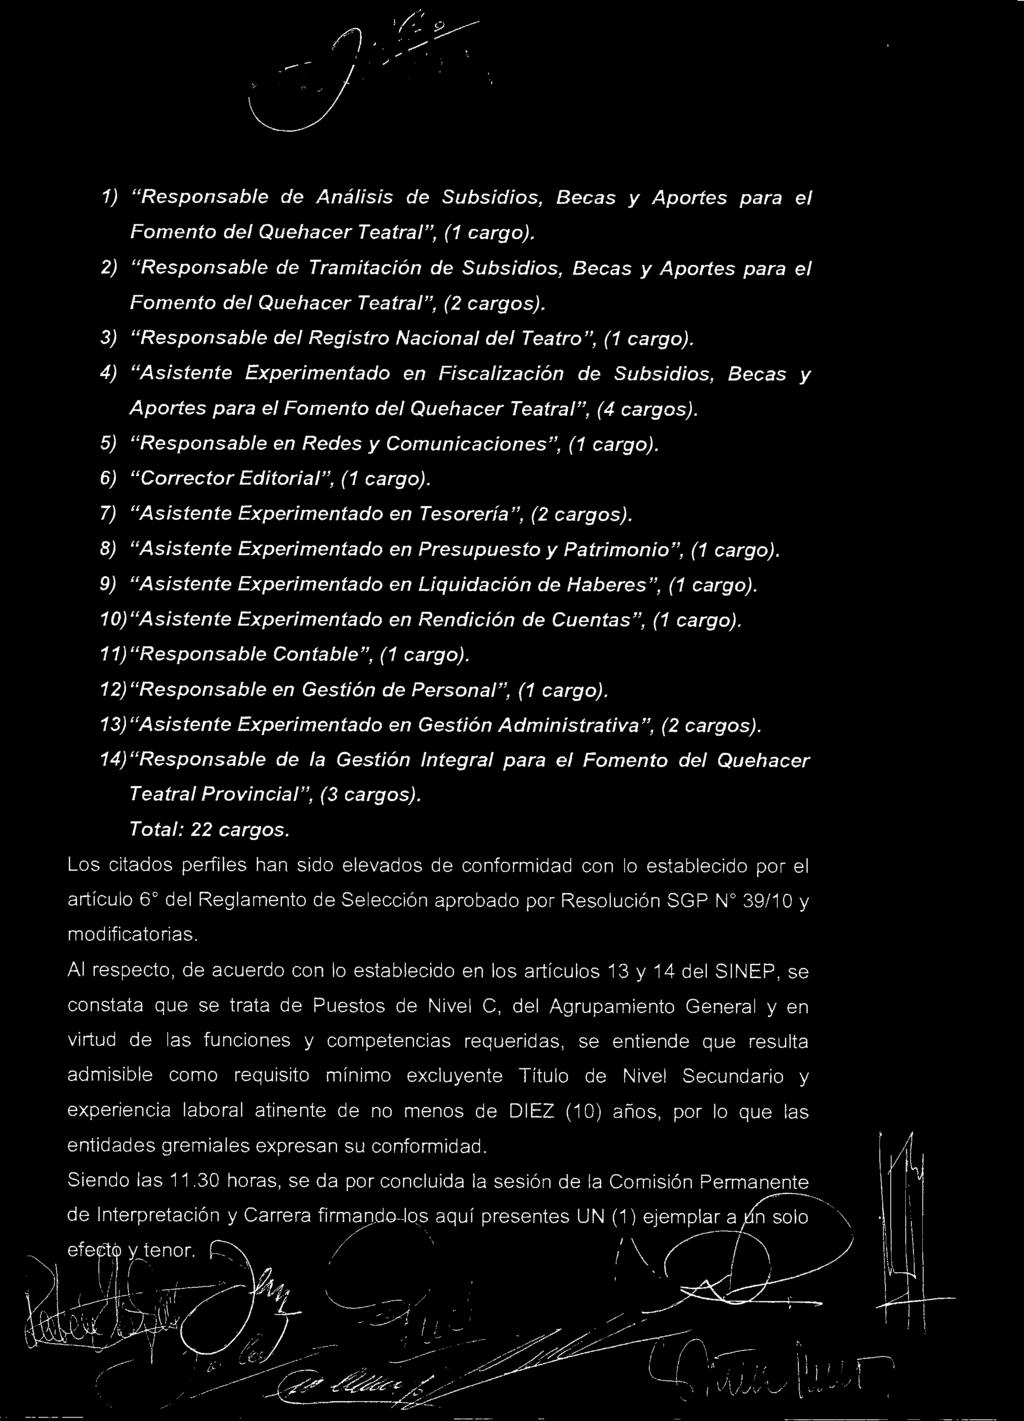 4) "Asstente Expermentado en Fscalzacón de Subsdos, Becas y Aportes para el Fomento del Quehacer Teatral", (4 cargos). 5) "Responsable en Redes y Comuncacones", (1 cargo).